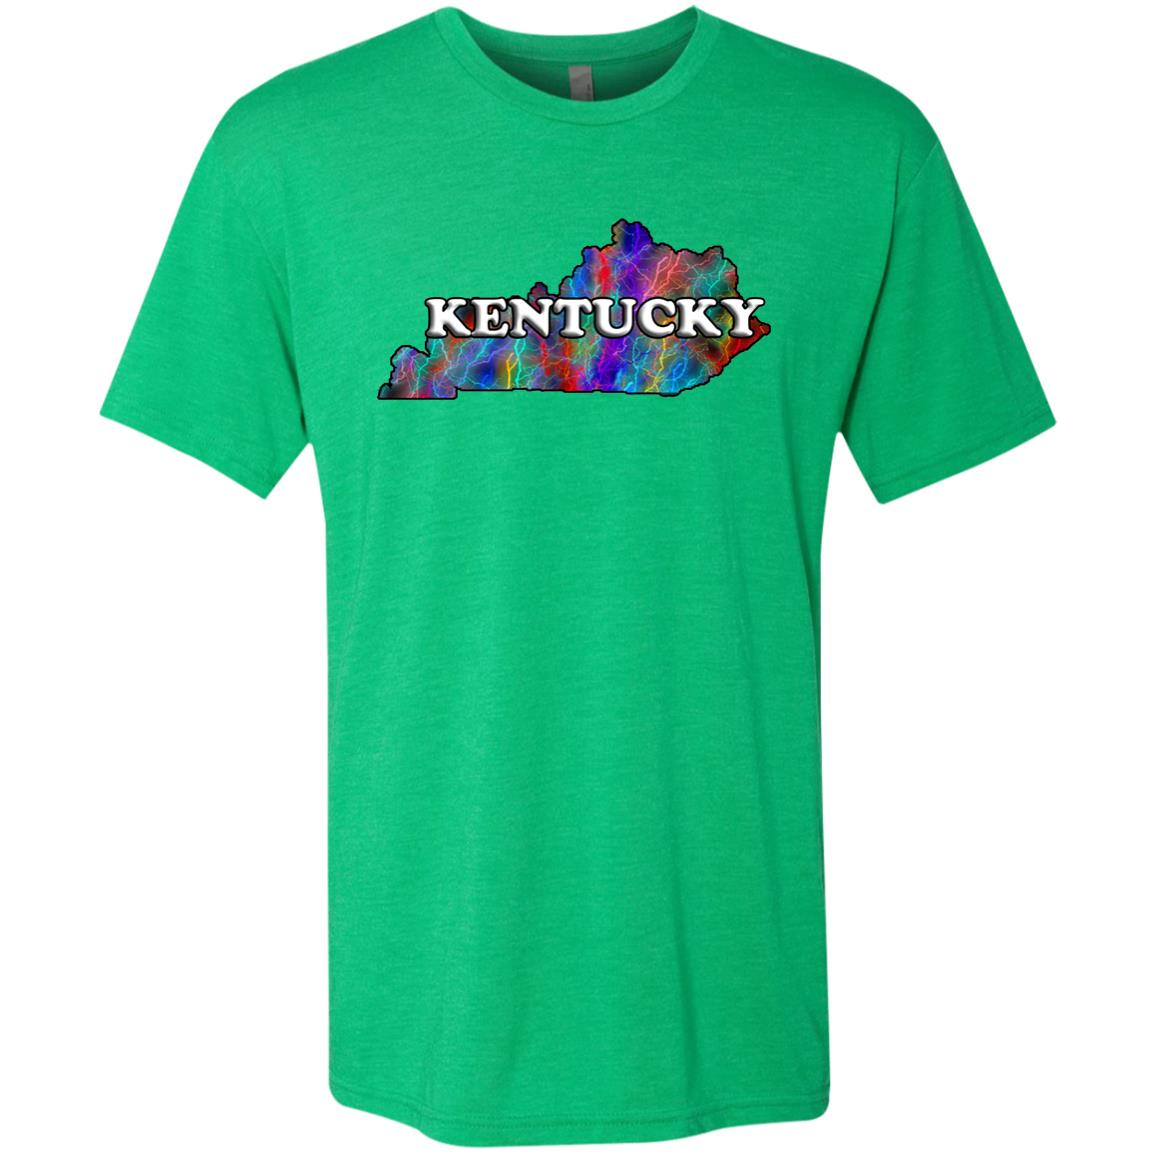 Kentucky State T-Shirt